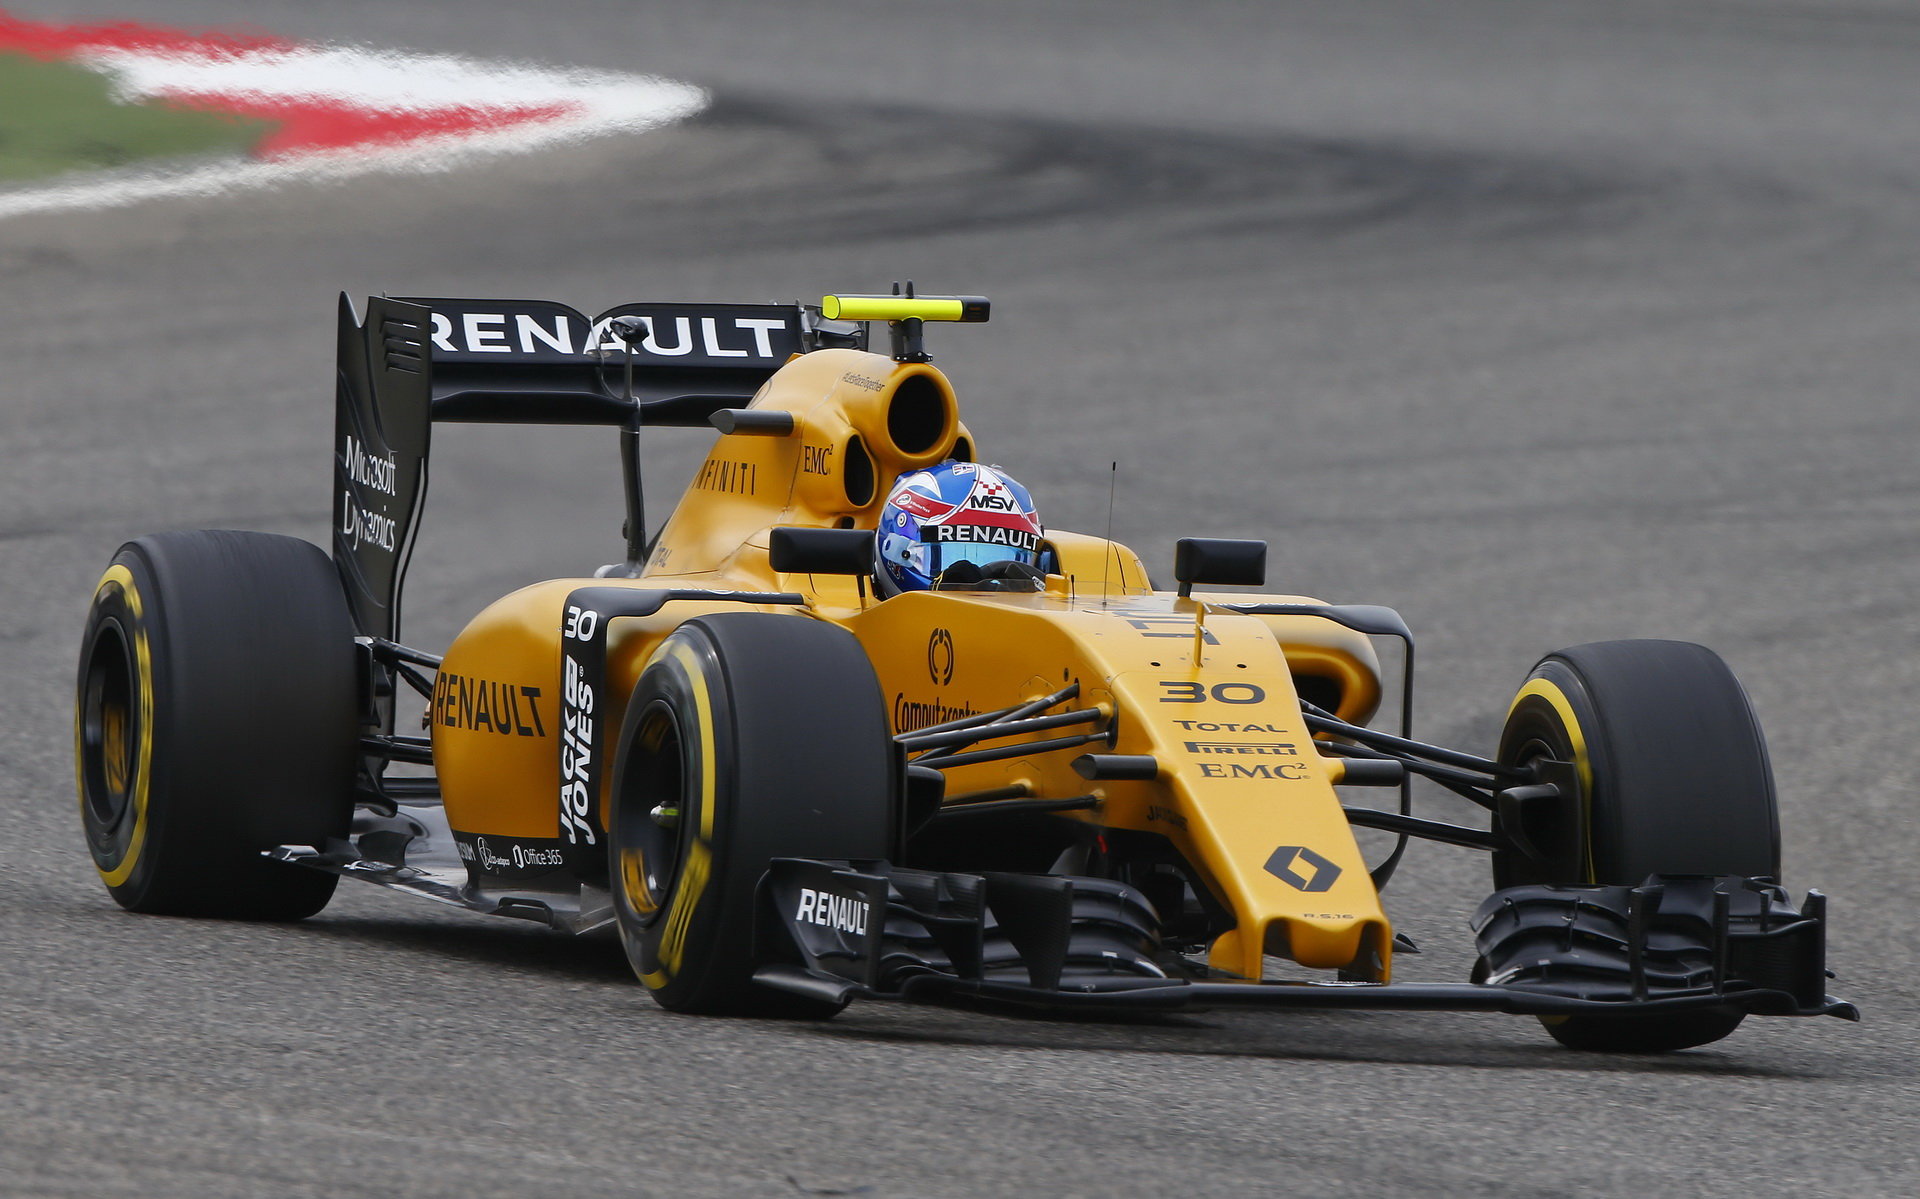 Renault do letošní sezóny nevstoupil zrovna pravou nohou, ale neztrácí optimismus